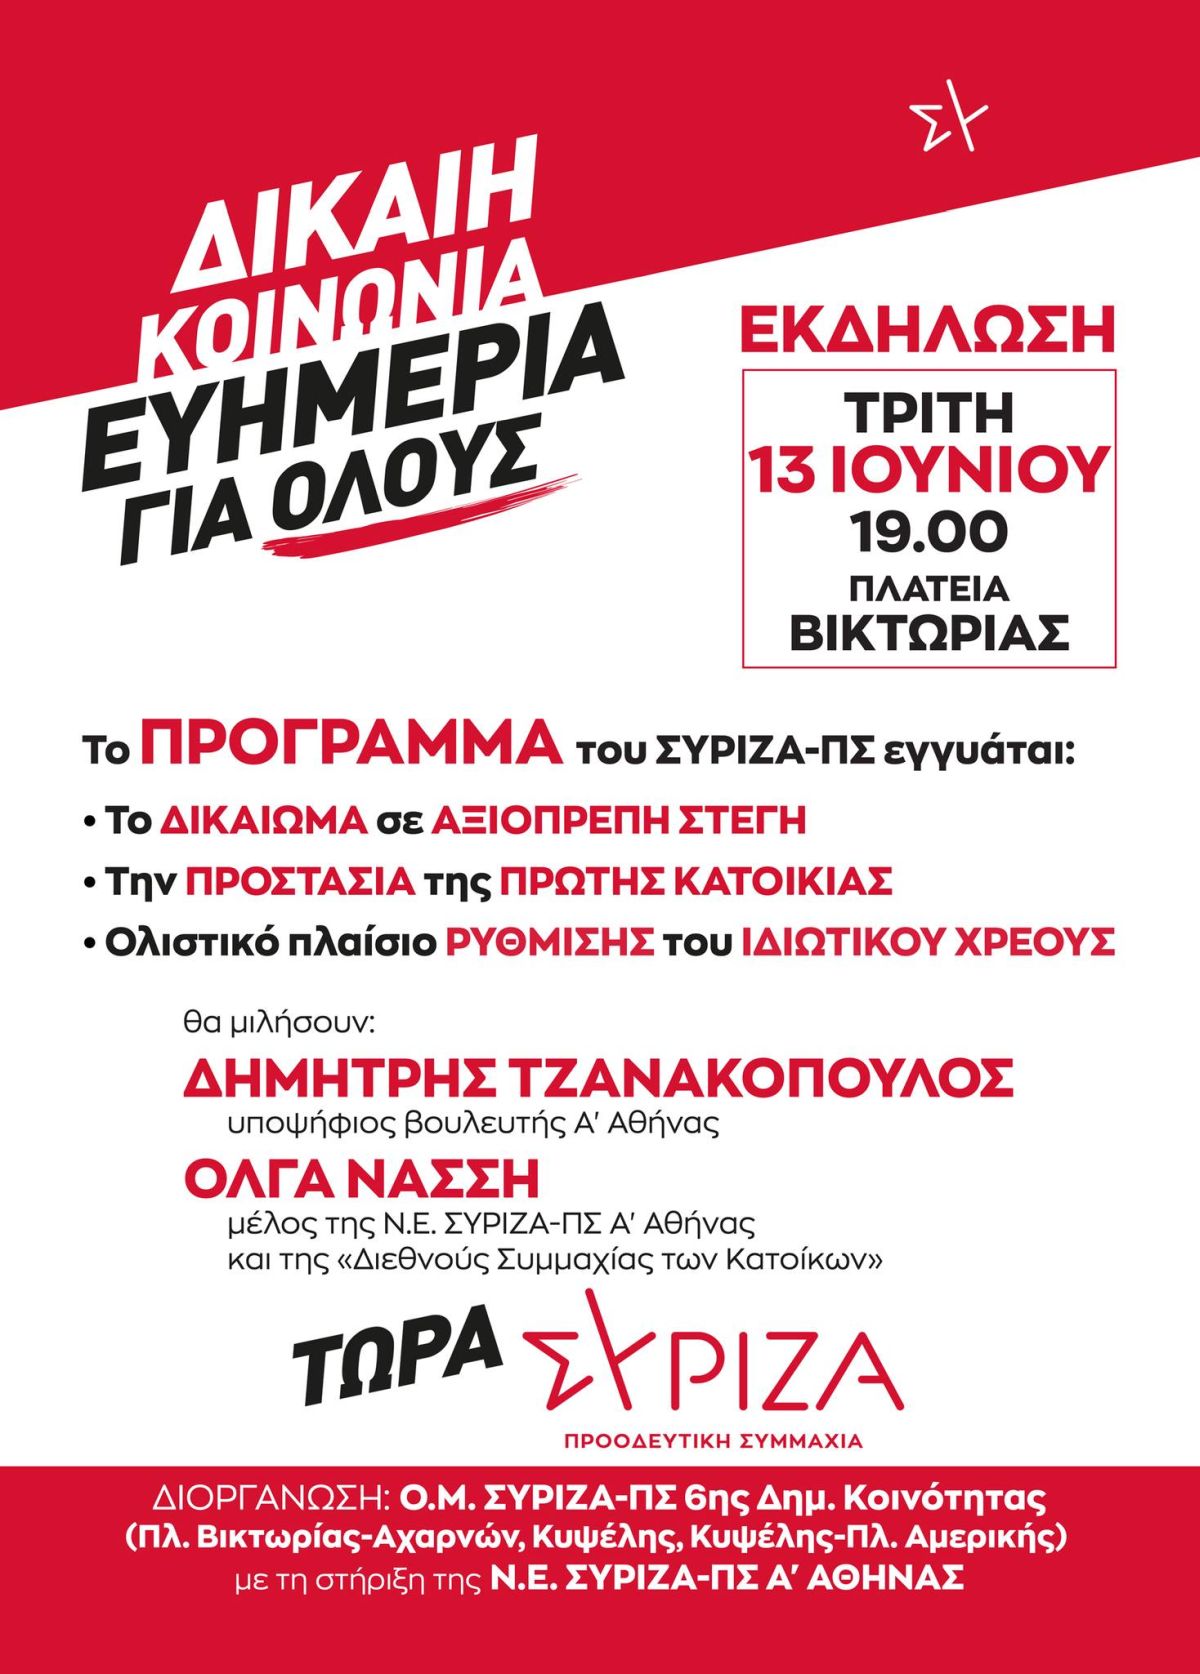 Θεματική εκδήλωση των Ο.Μ. 6ης Δημοτικής Κοινότητας Αθήνας για το δικαίωμα σε αξιοπρεπή στέγη την Τρίτη 13/6 στην πλατεία Βικτωρίας